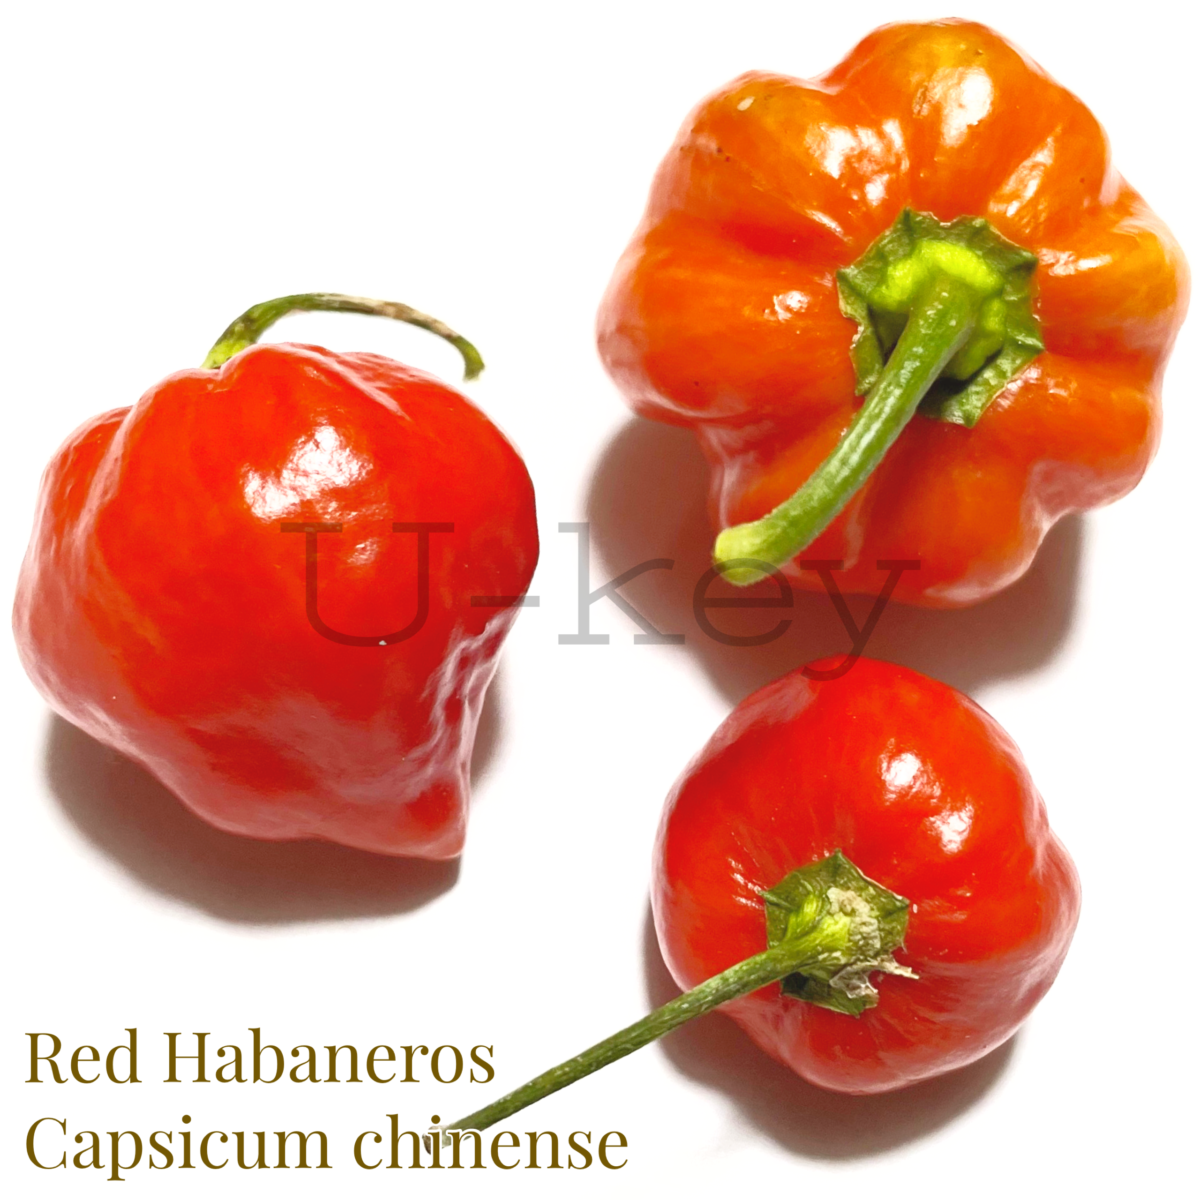 Red Habaneros,Capsicum chinense